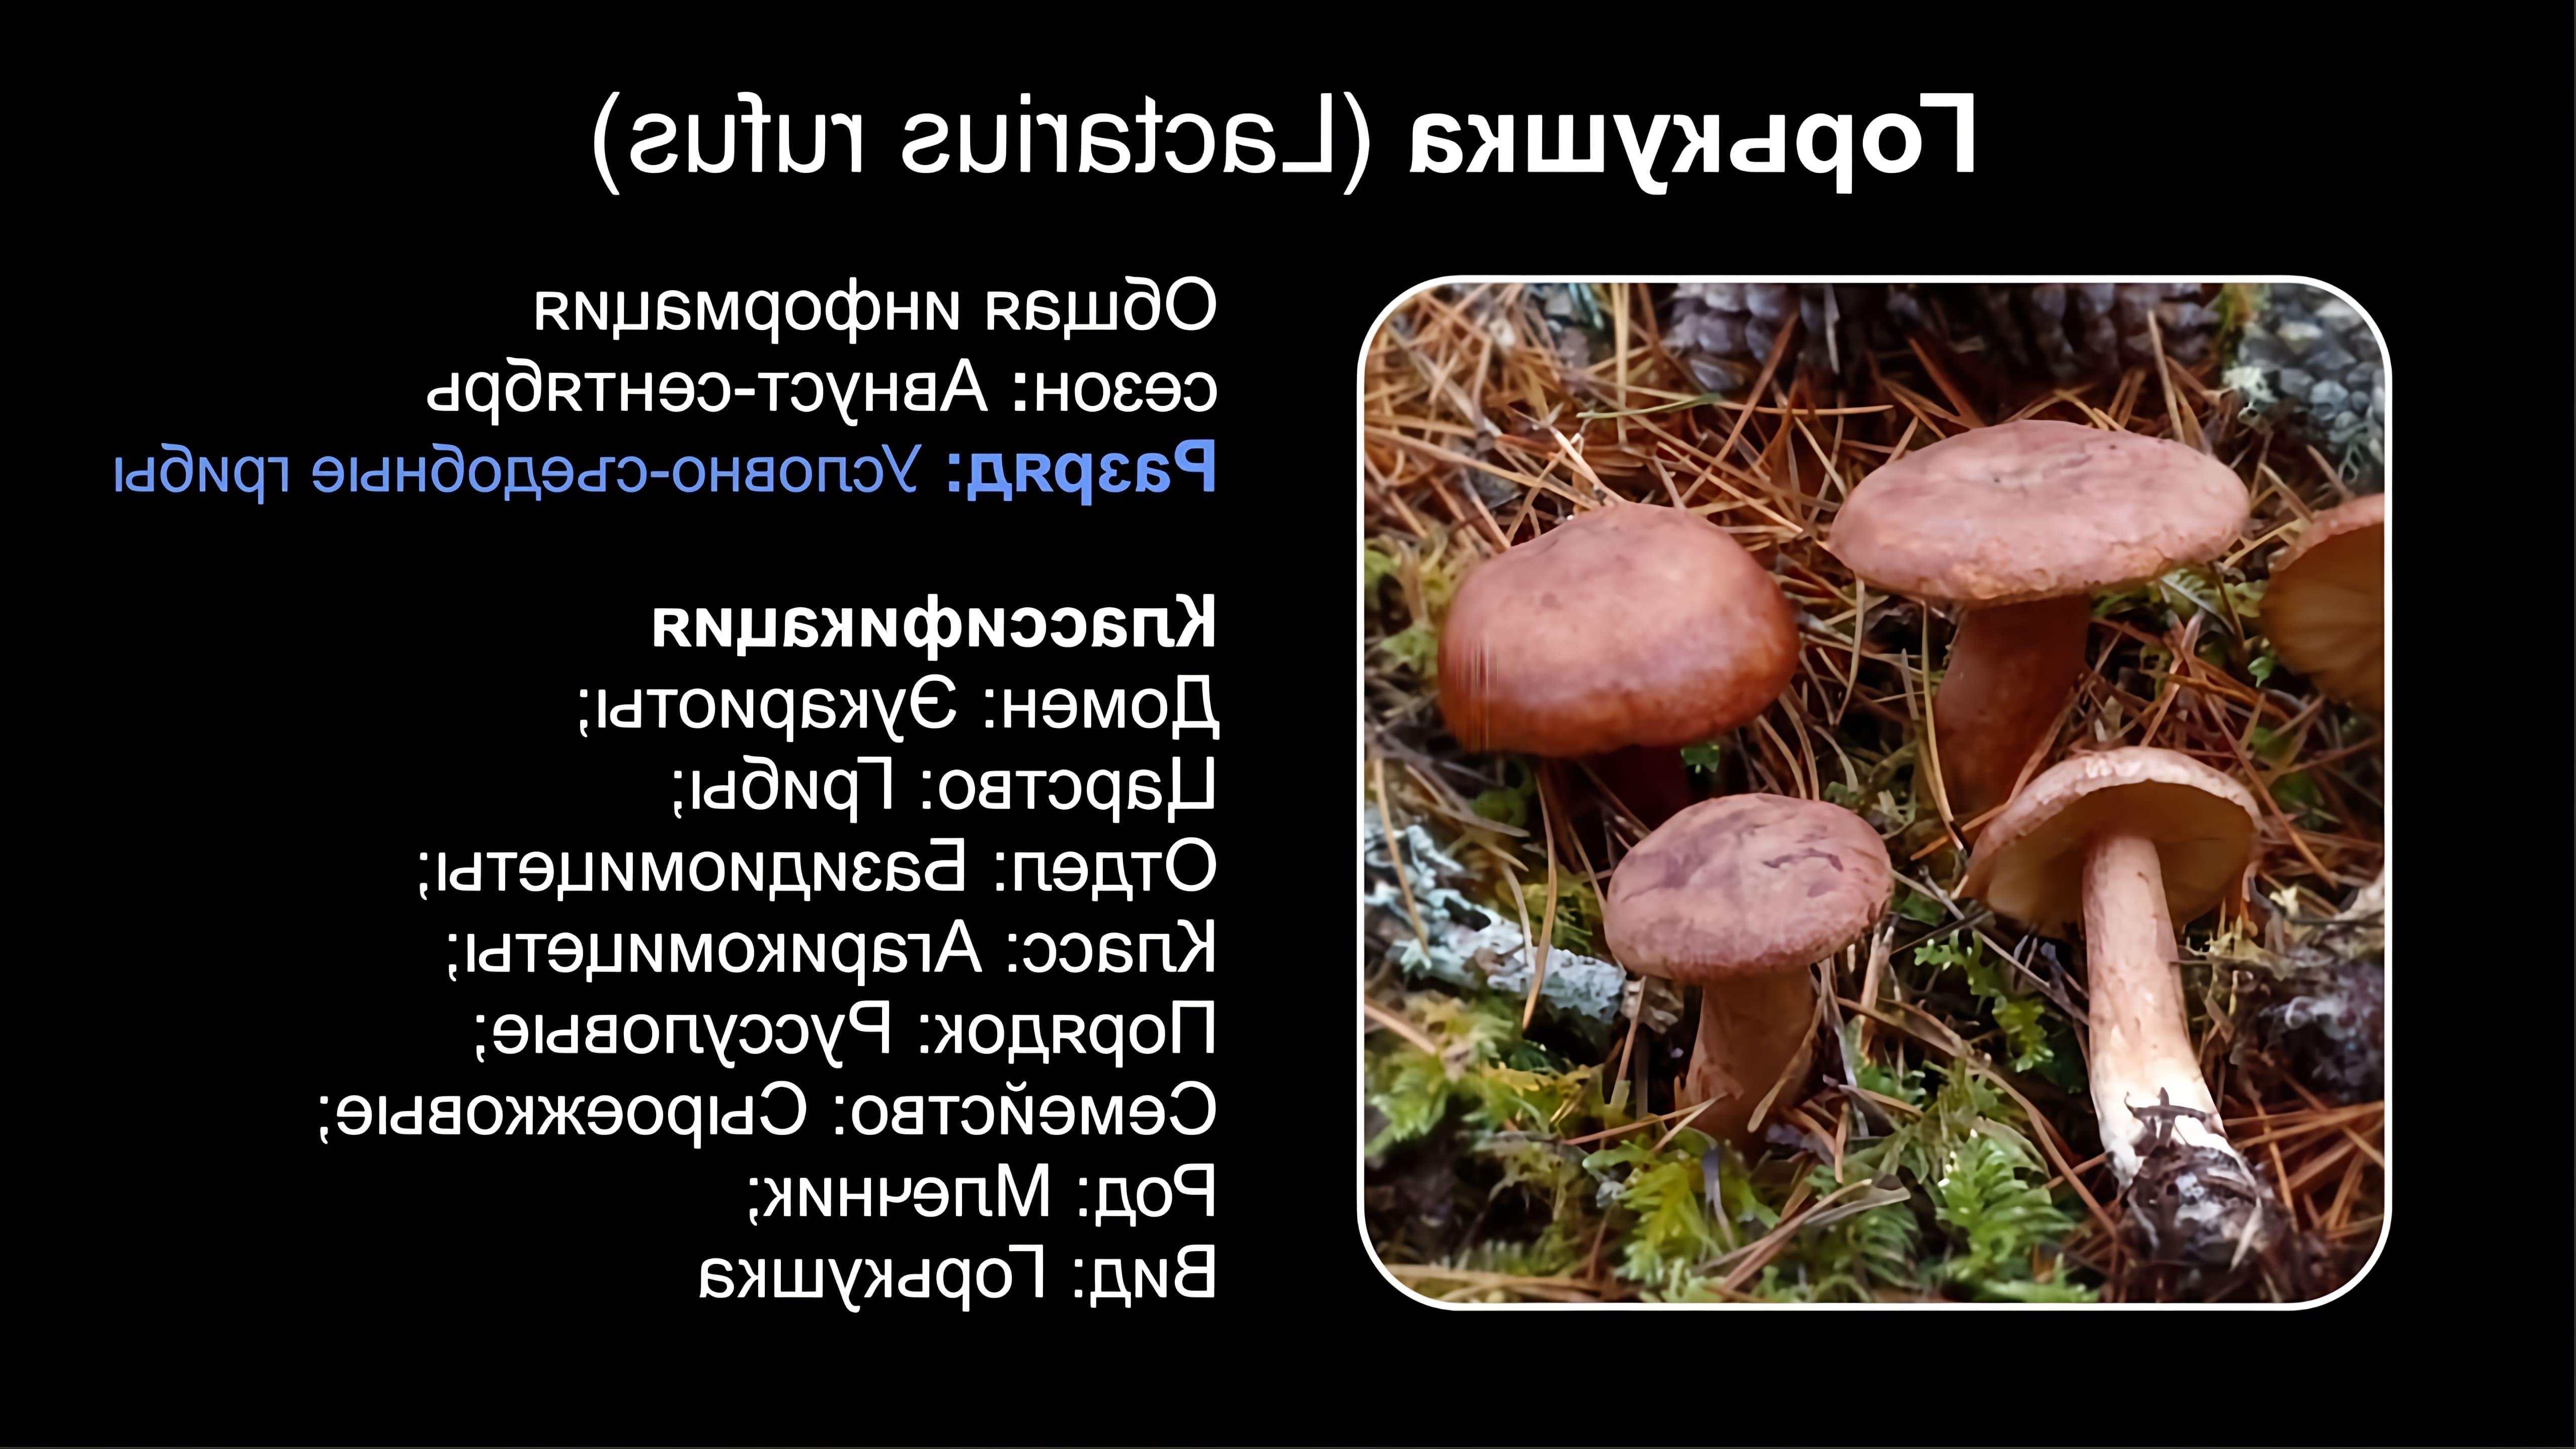 В данном видео рассказывается о грибе, известном как Горькушка (Lactarius rufus)